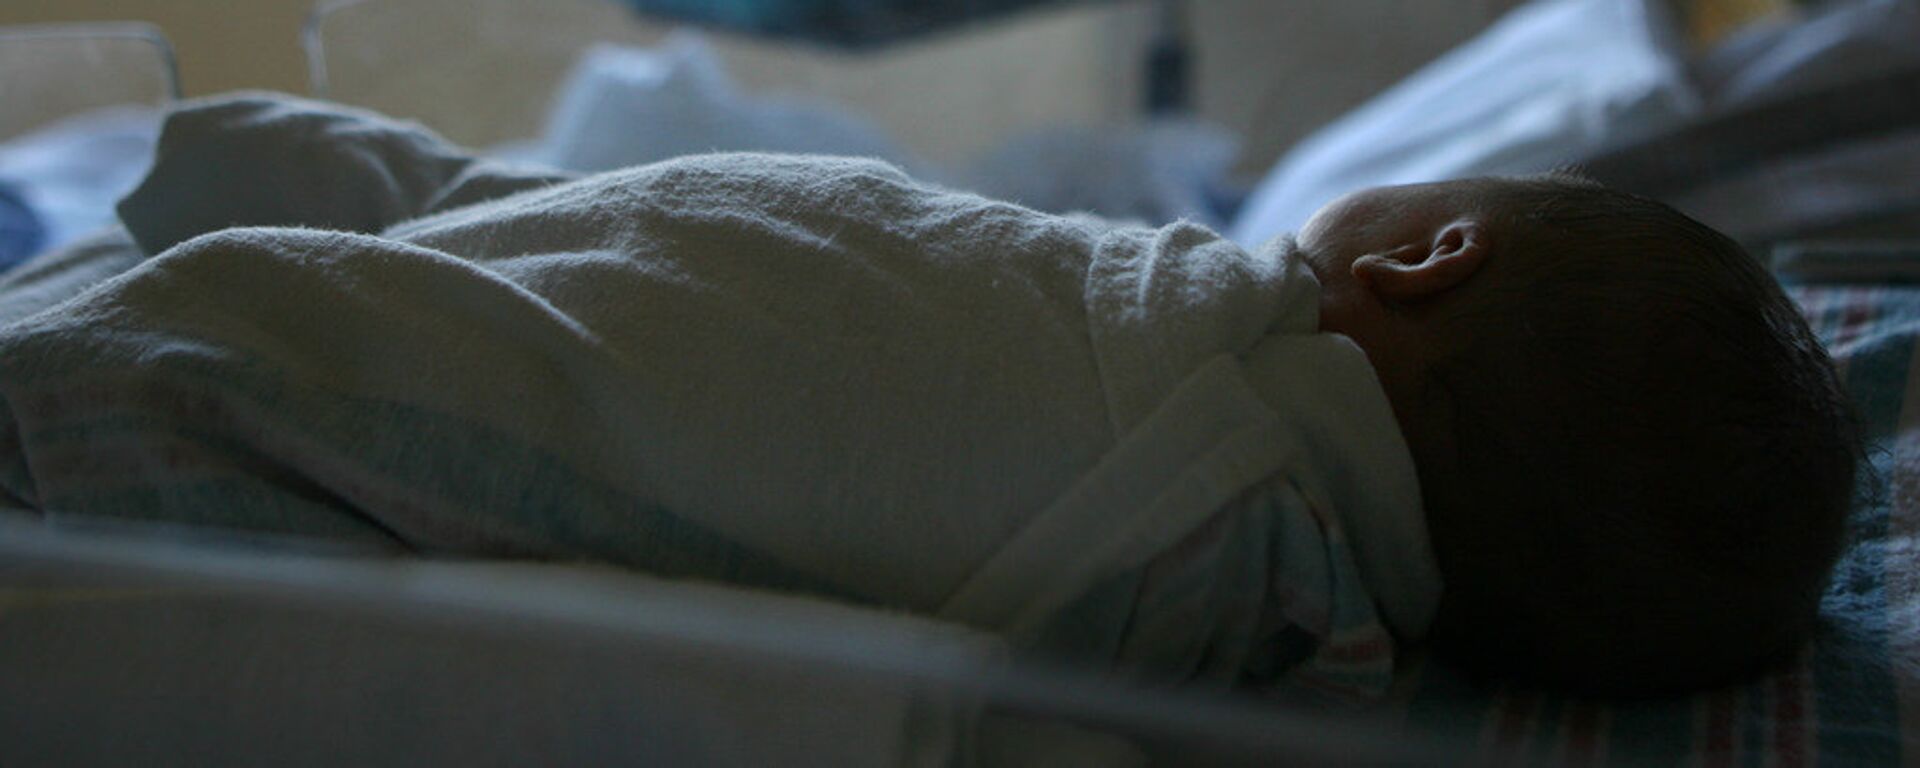 Новорожденный ребенок лежит в больнице - Sputnik Грузия, 1920, 29.01.2021